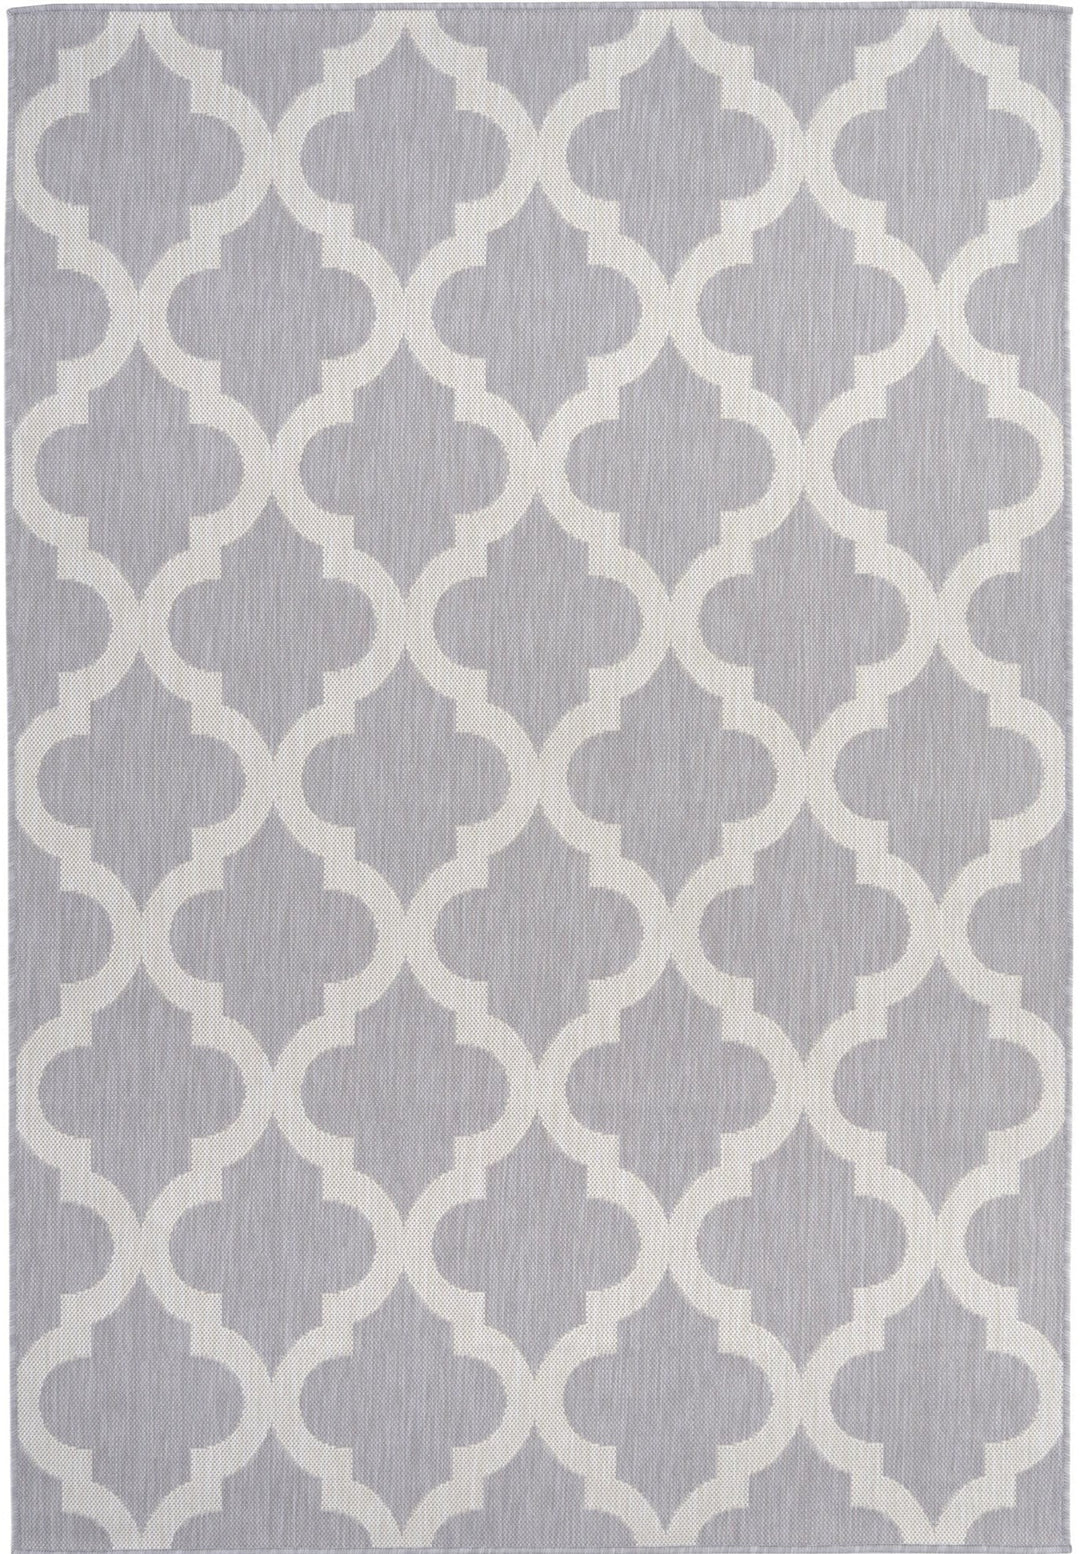 trellis-design-outdoor-rug-in-grey